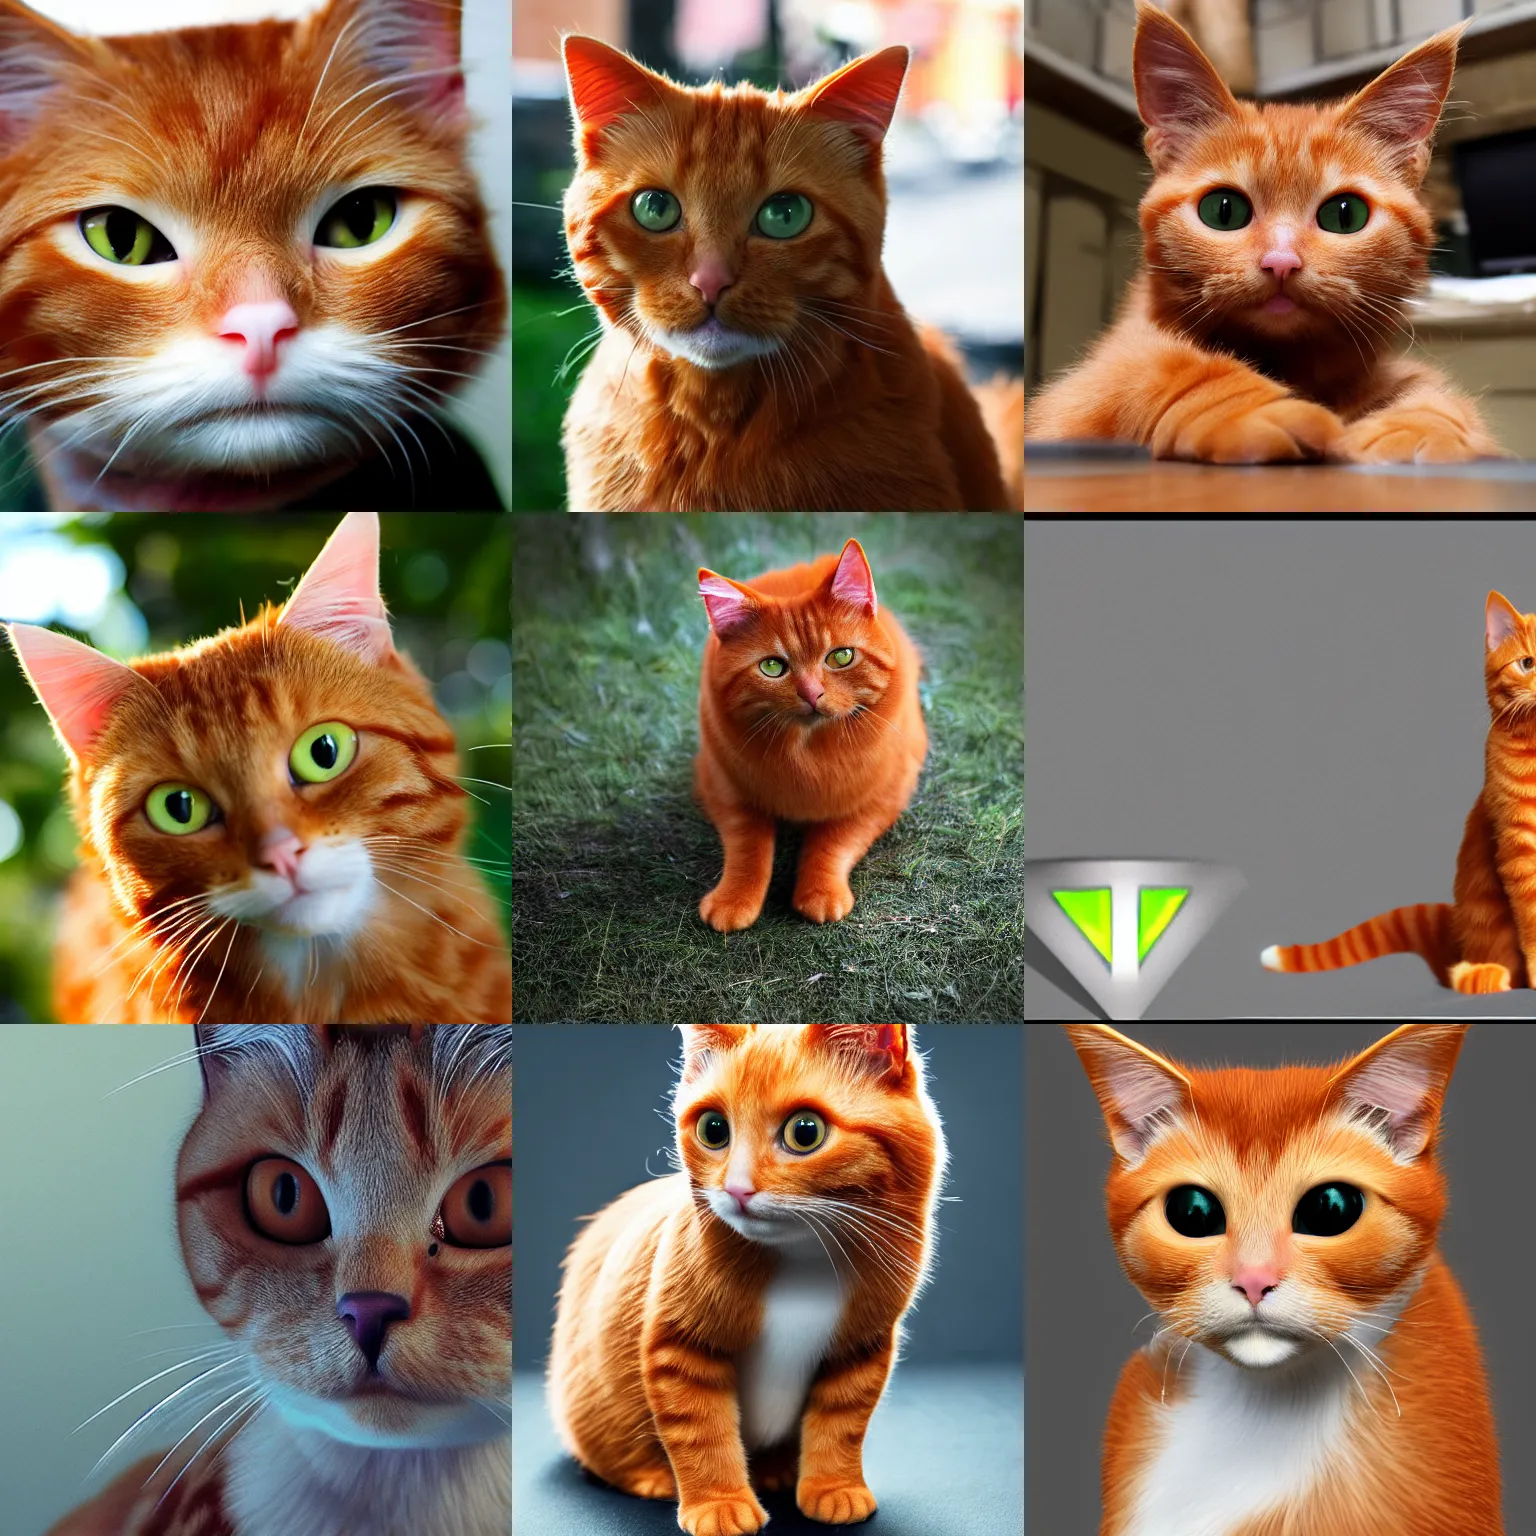 Prompt: VFX, ginger cat